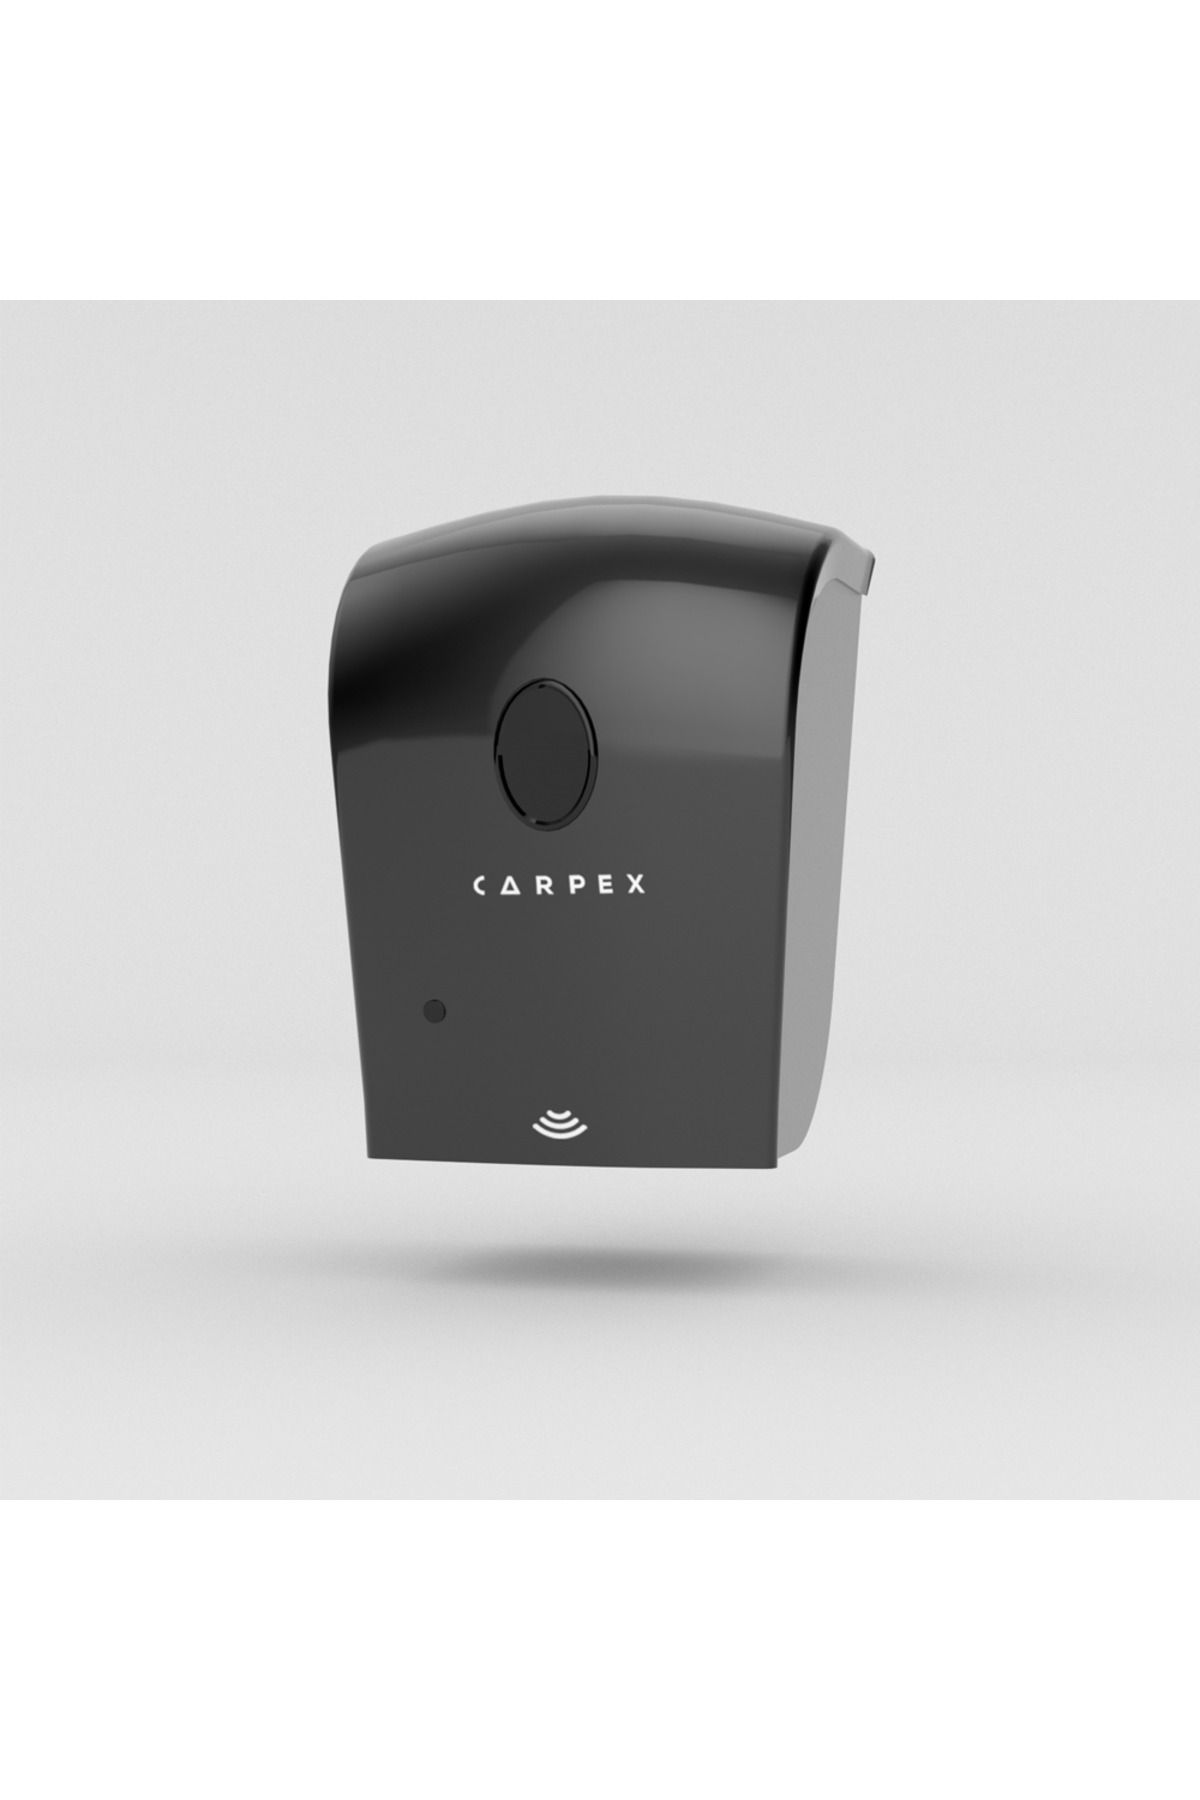 Carpex Otomatik Sensörlü Siyah Dezenfektan Ve Sıvı Sabun Dispenseri Hazneli 529302150001